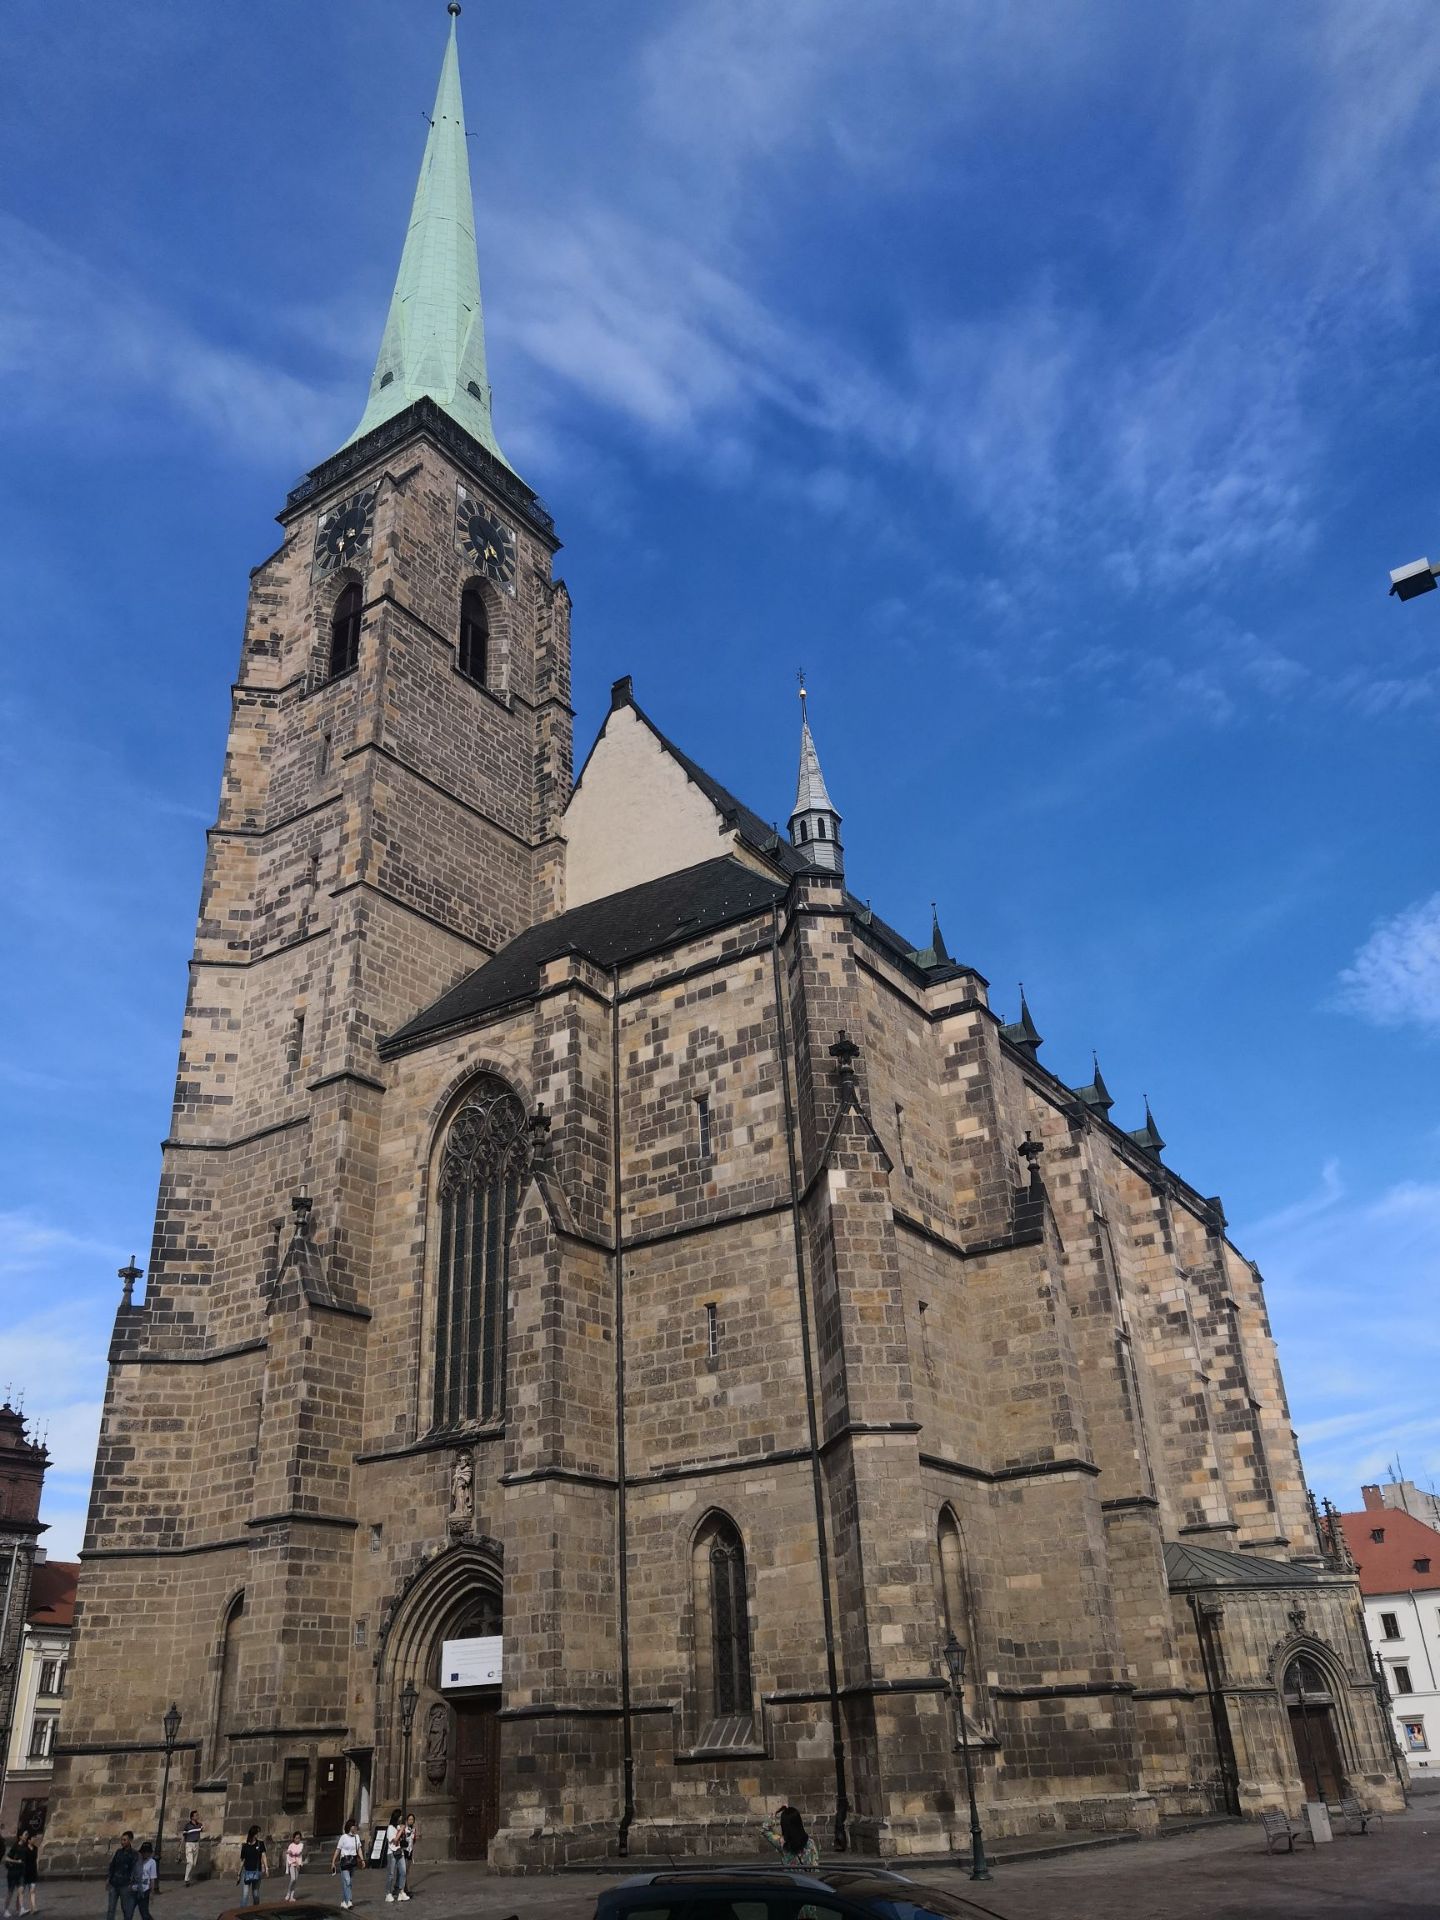 捷克的比尔森小镇上有一座圣巴尔多禄茂主教座堂。教堂在市中心的广场中央，为哥特式风格，沿教堂的塔楼可以